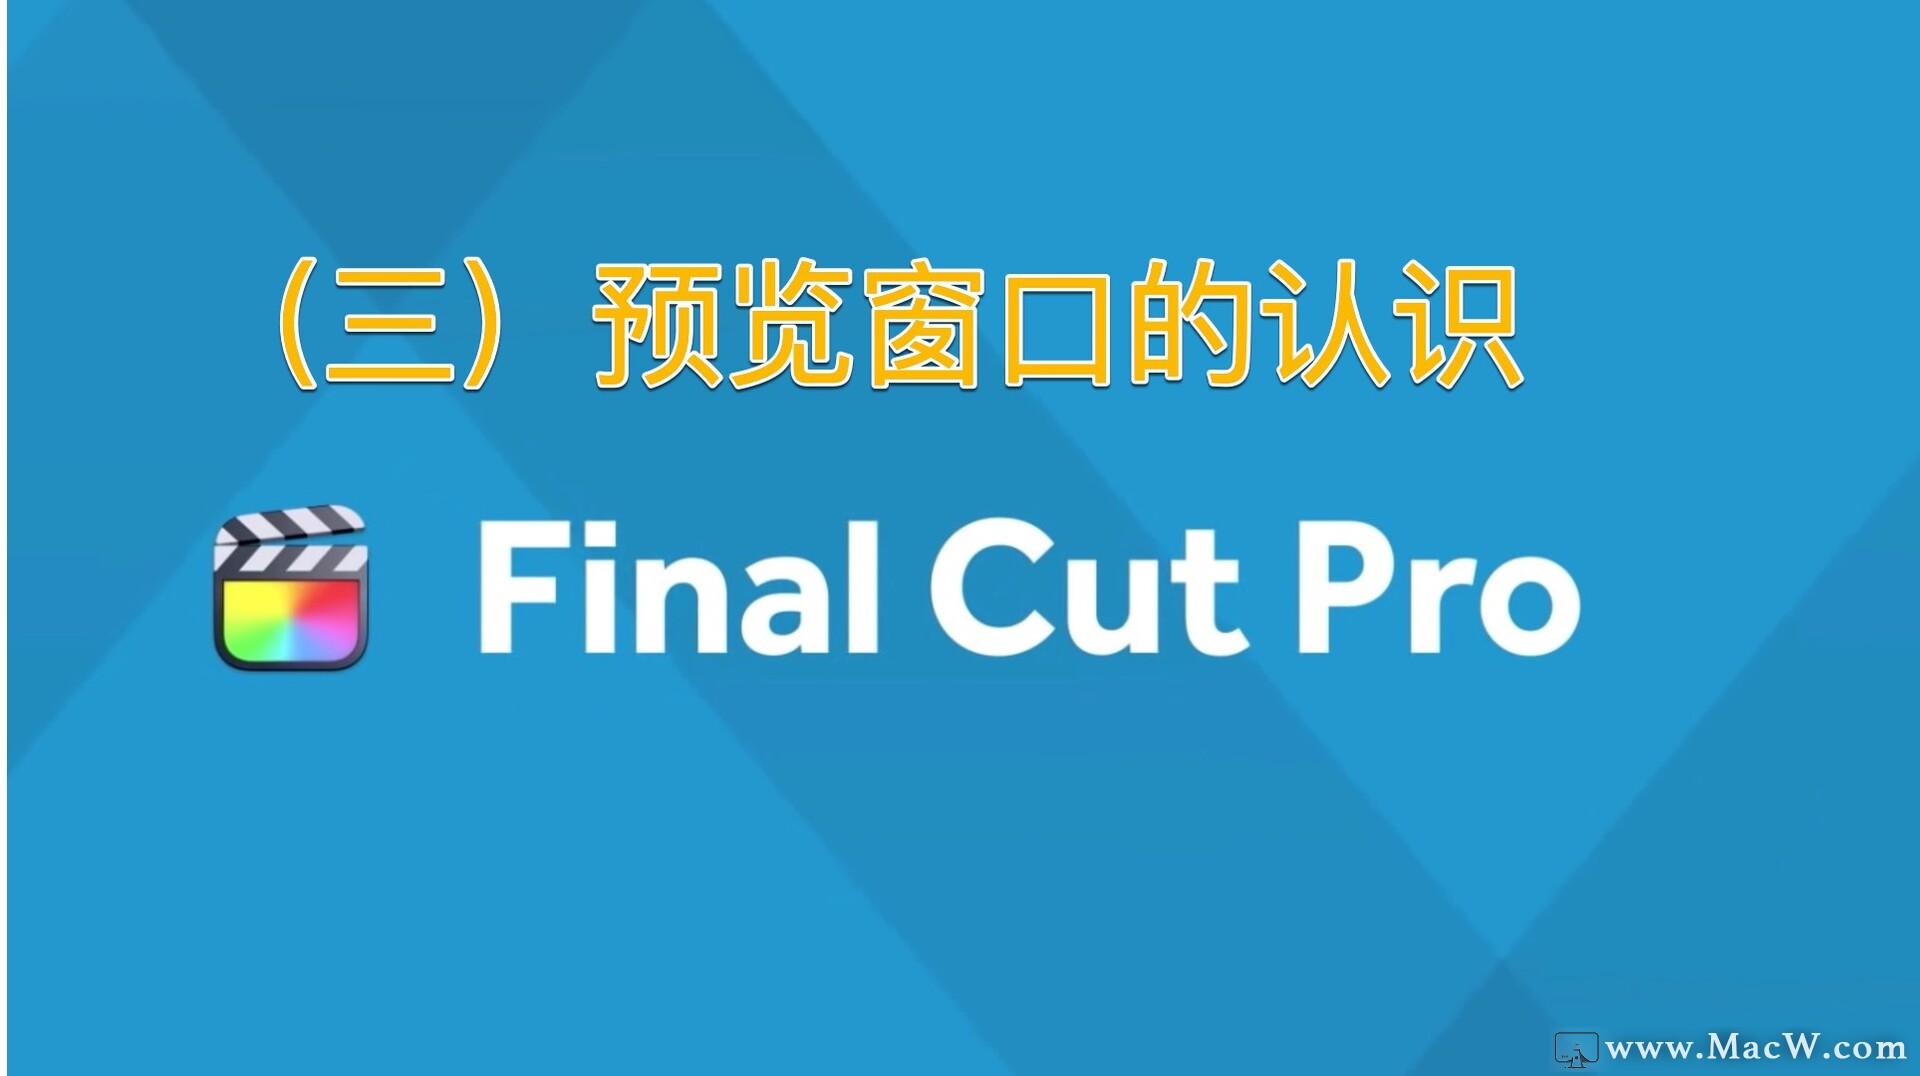 Final Cut Pro中文新手教程 (3) 预览窗口的认识 - 图1